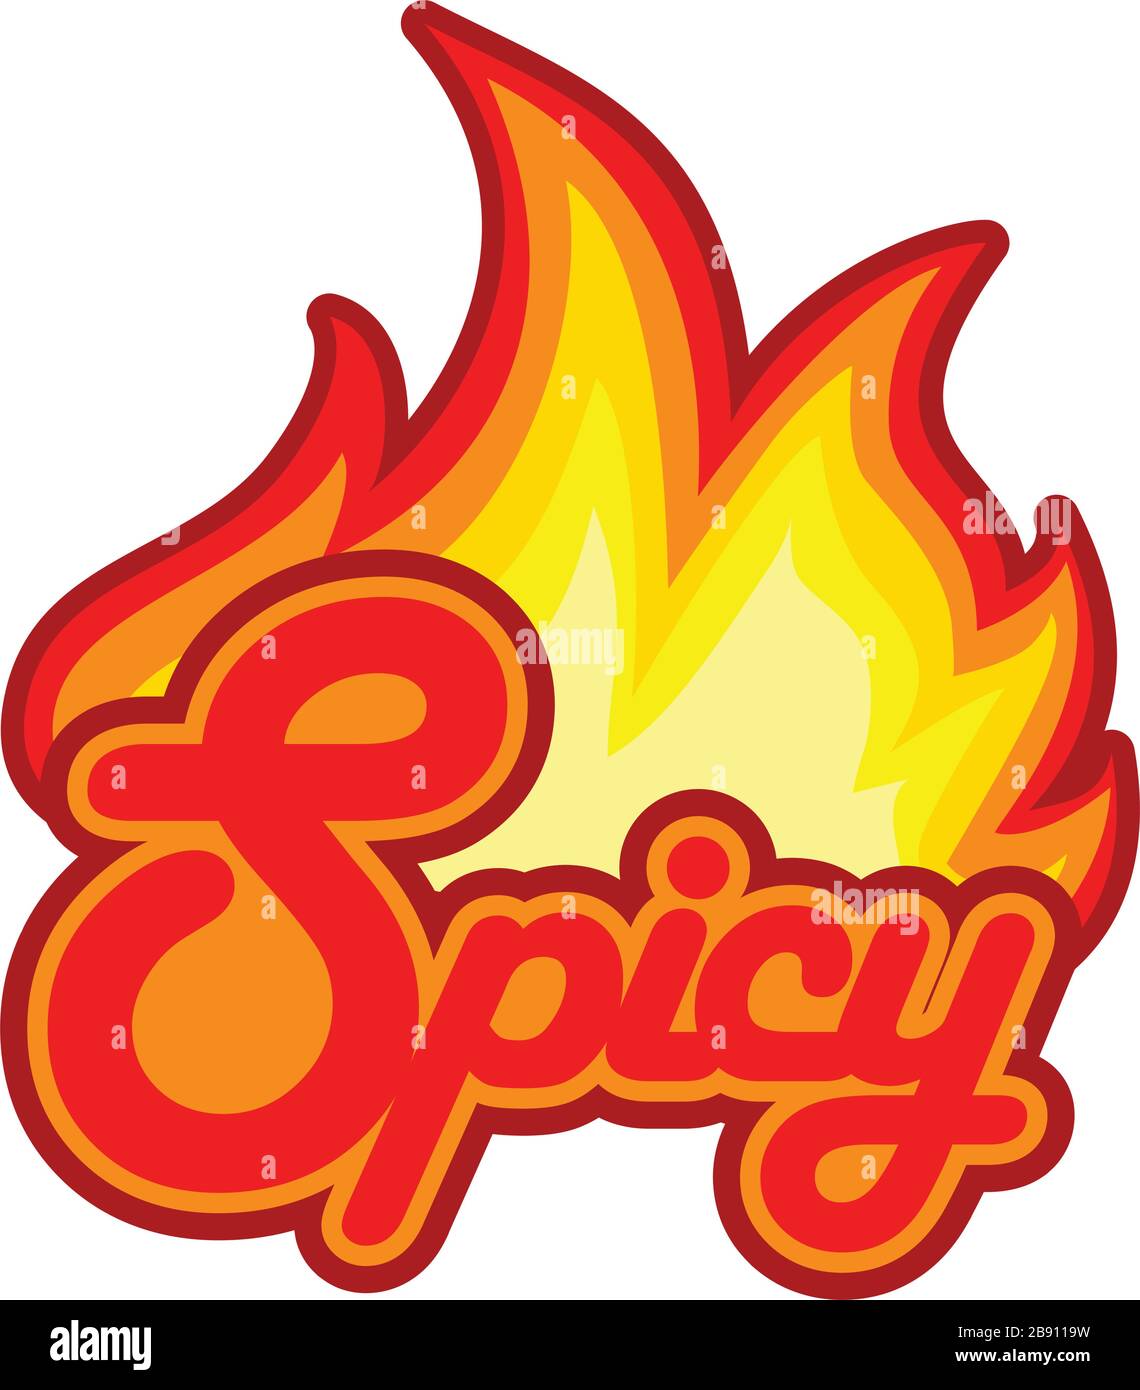 Concetto vettoriale di un logo speziato con il fuoco come segno di carattere per il calore Illustrazione Vettoriale